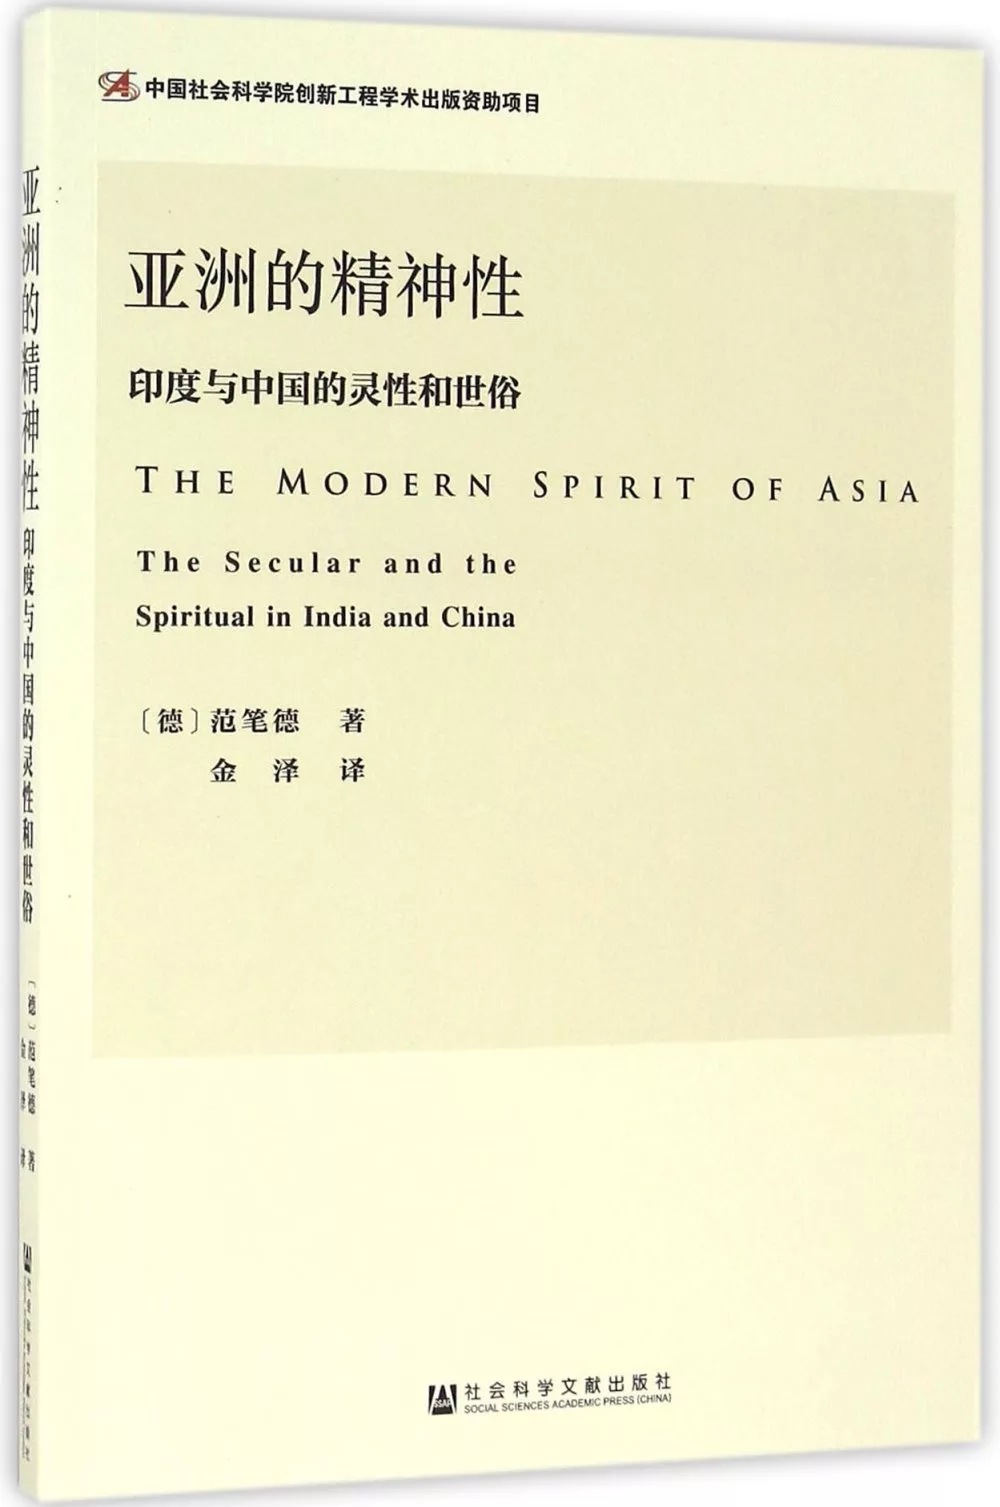 亞洲的精神性：印度與中國的靈性和世俗